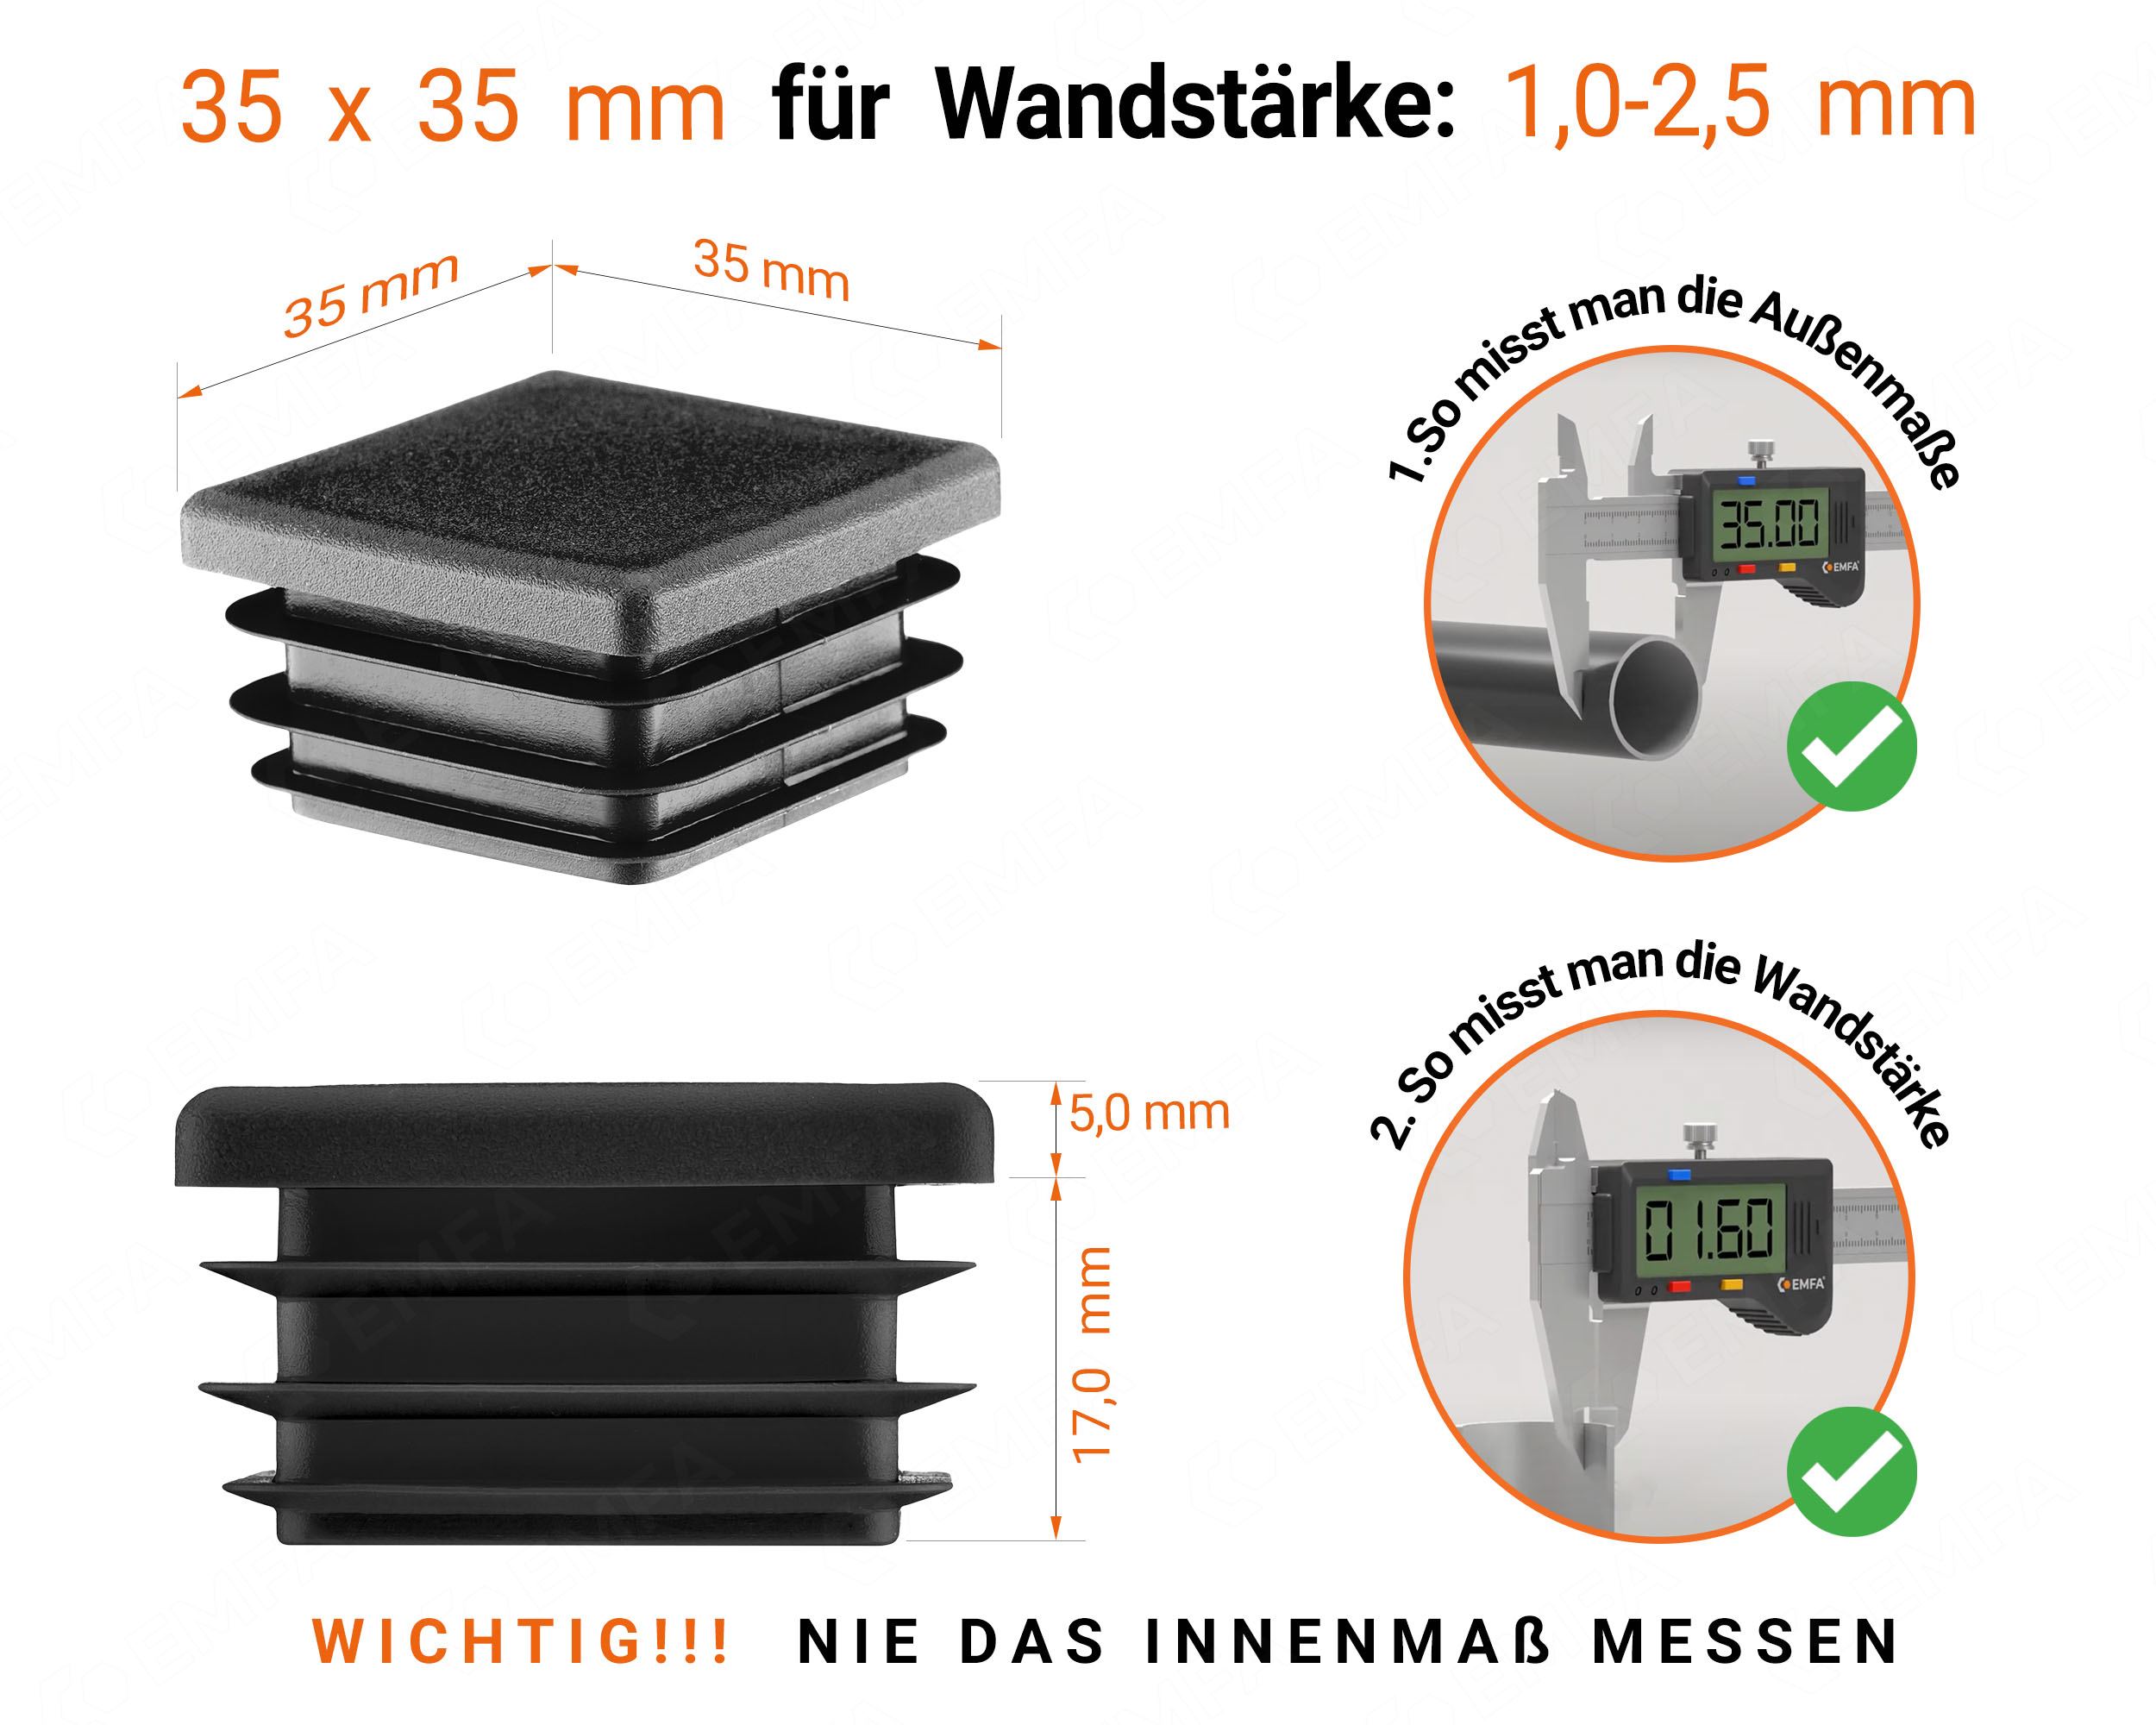 Schwarze Endkappe für Vierkantrohre in der Größe 35x35 mm mit technischen Abmessungen und Anleitung für korrekte Messung